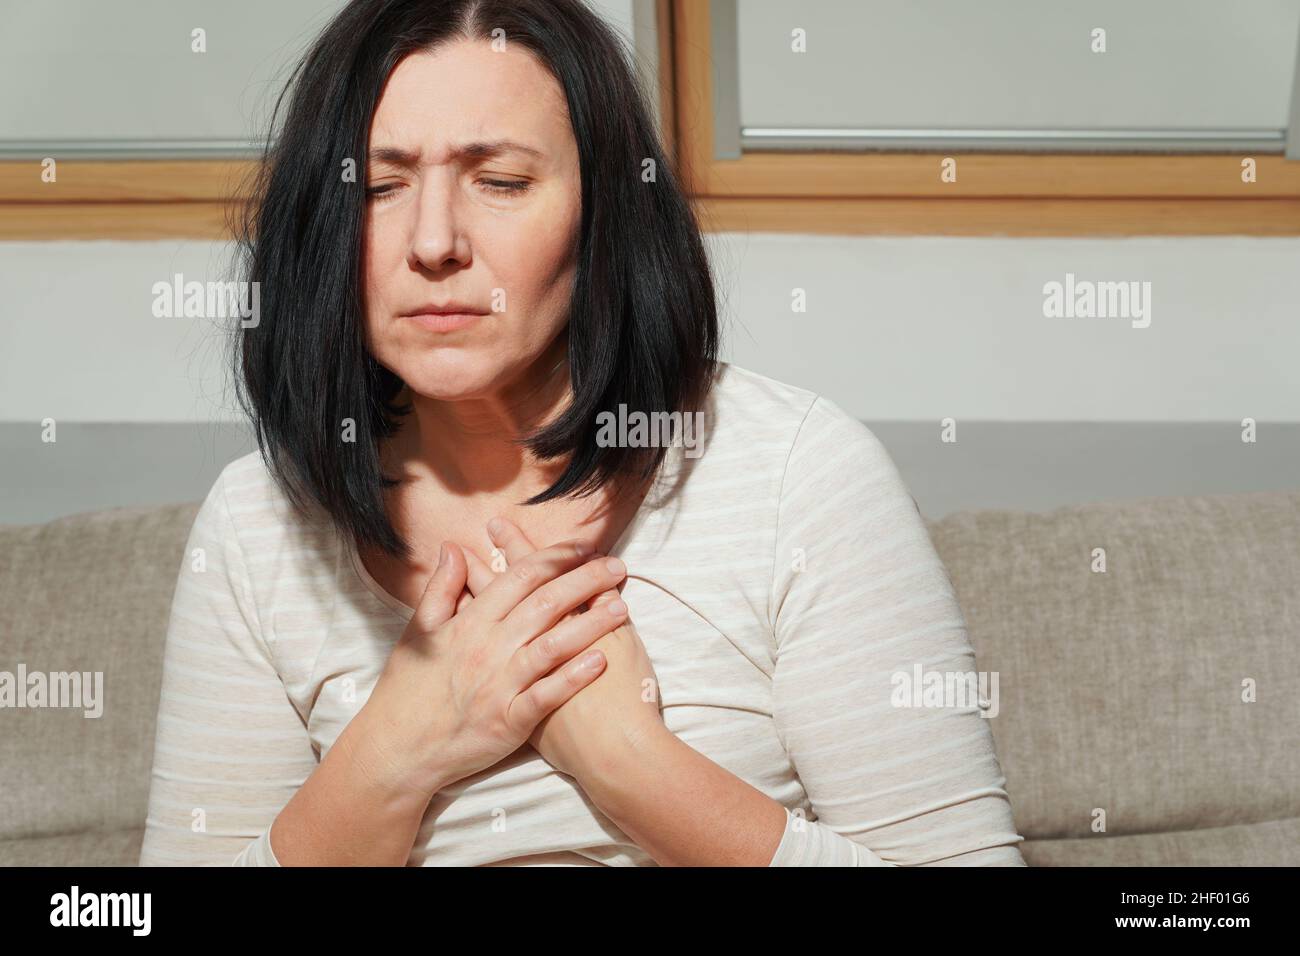 Ältere Frau mittleren Alters mit einem Herzinfarkt. Frau mit Brustschmerzen. Gesundheitsfürsorge und kardiologisches Konzept. Stockfoto